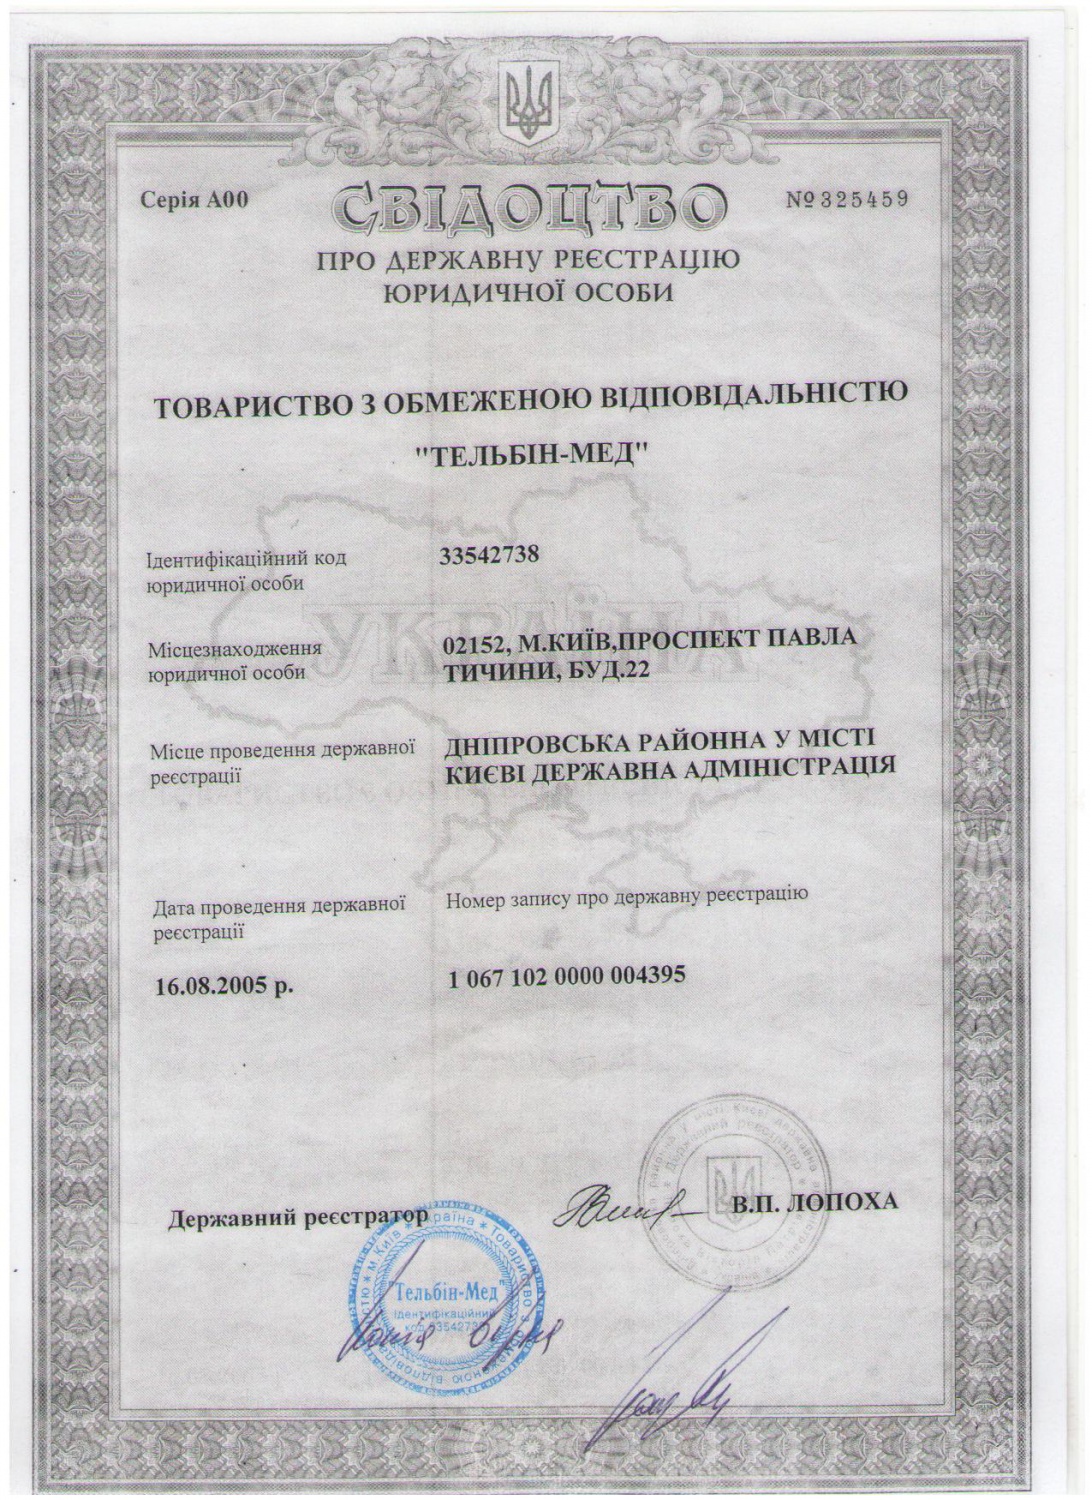 Свидетельство о регистрации ТОВ "Тельбин-Мед"